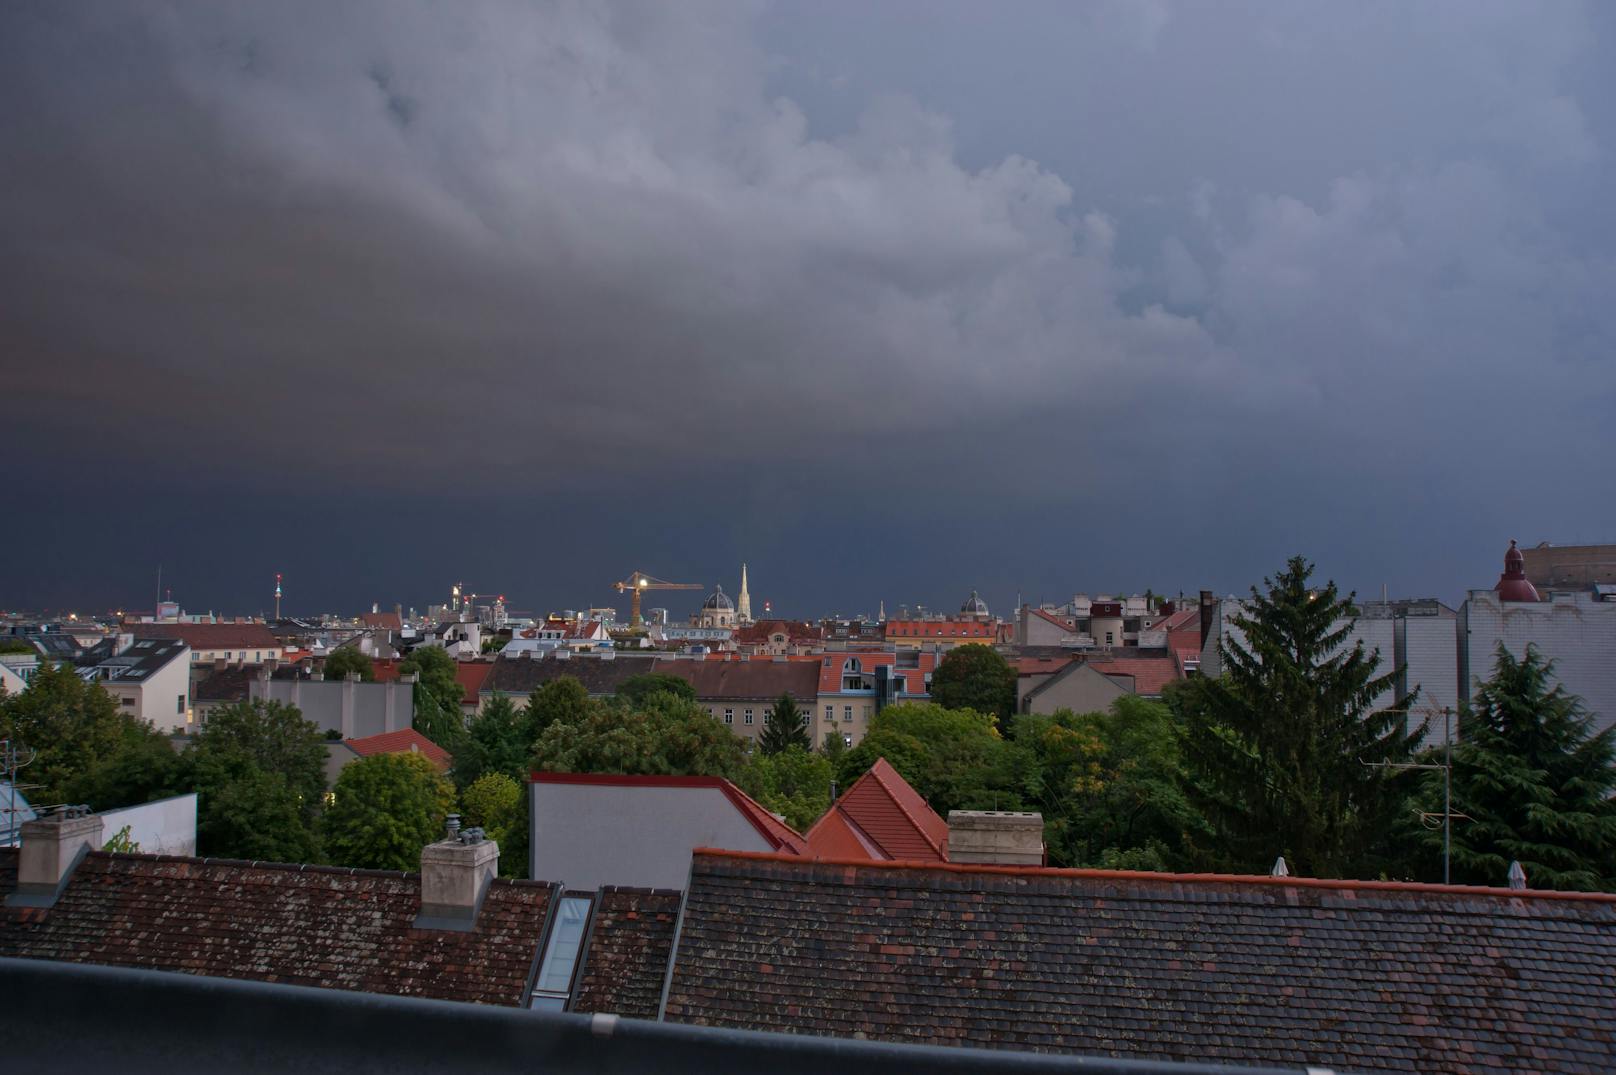 Wienpanorama mit Regenstimmung. Archivbild.